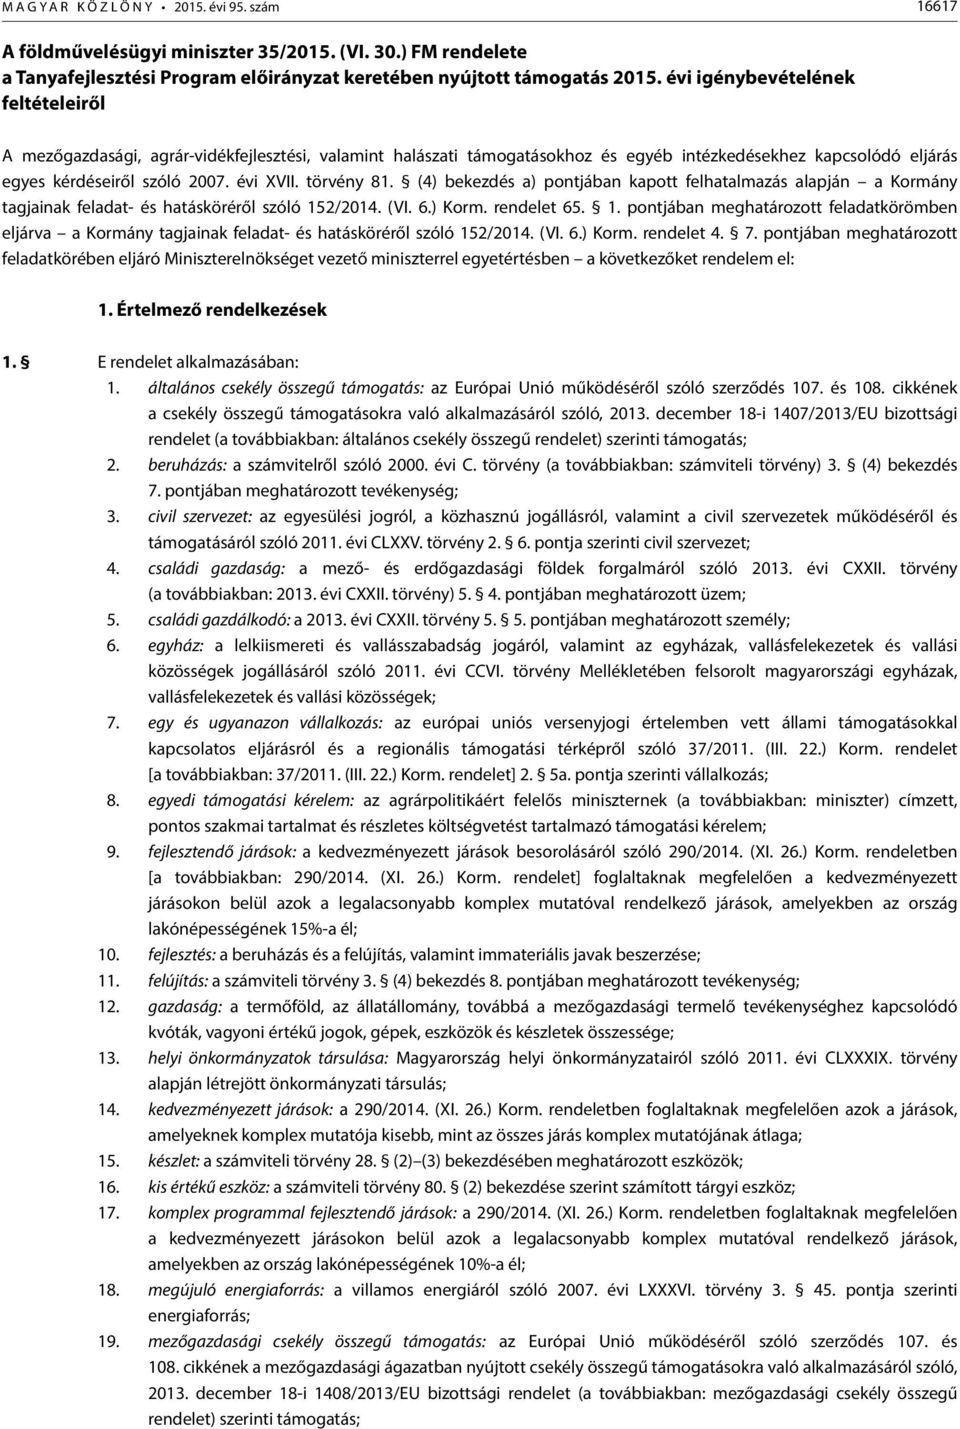 törvény 8. (4) bekezdés a) jában kapott felhatalmazás alapján a Kormány tagjainak feladat- és hatásköréről szóló /4. (VI. 6.) Korm. rendelet 6.